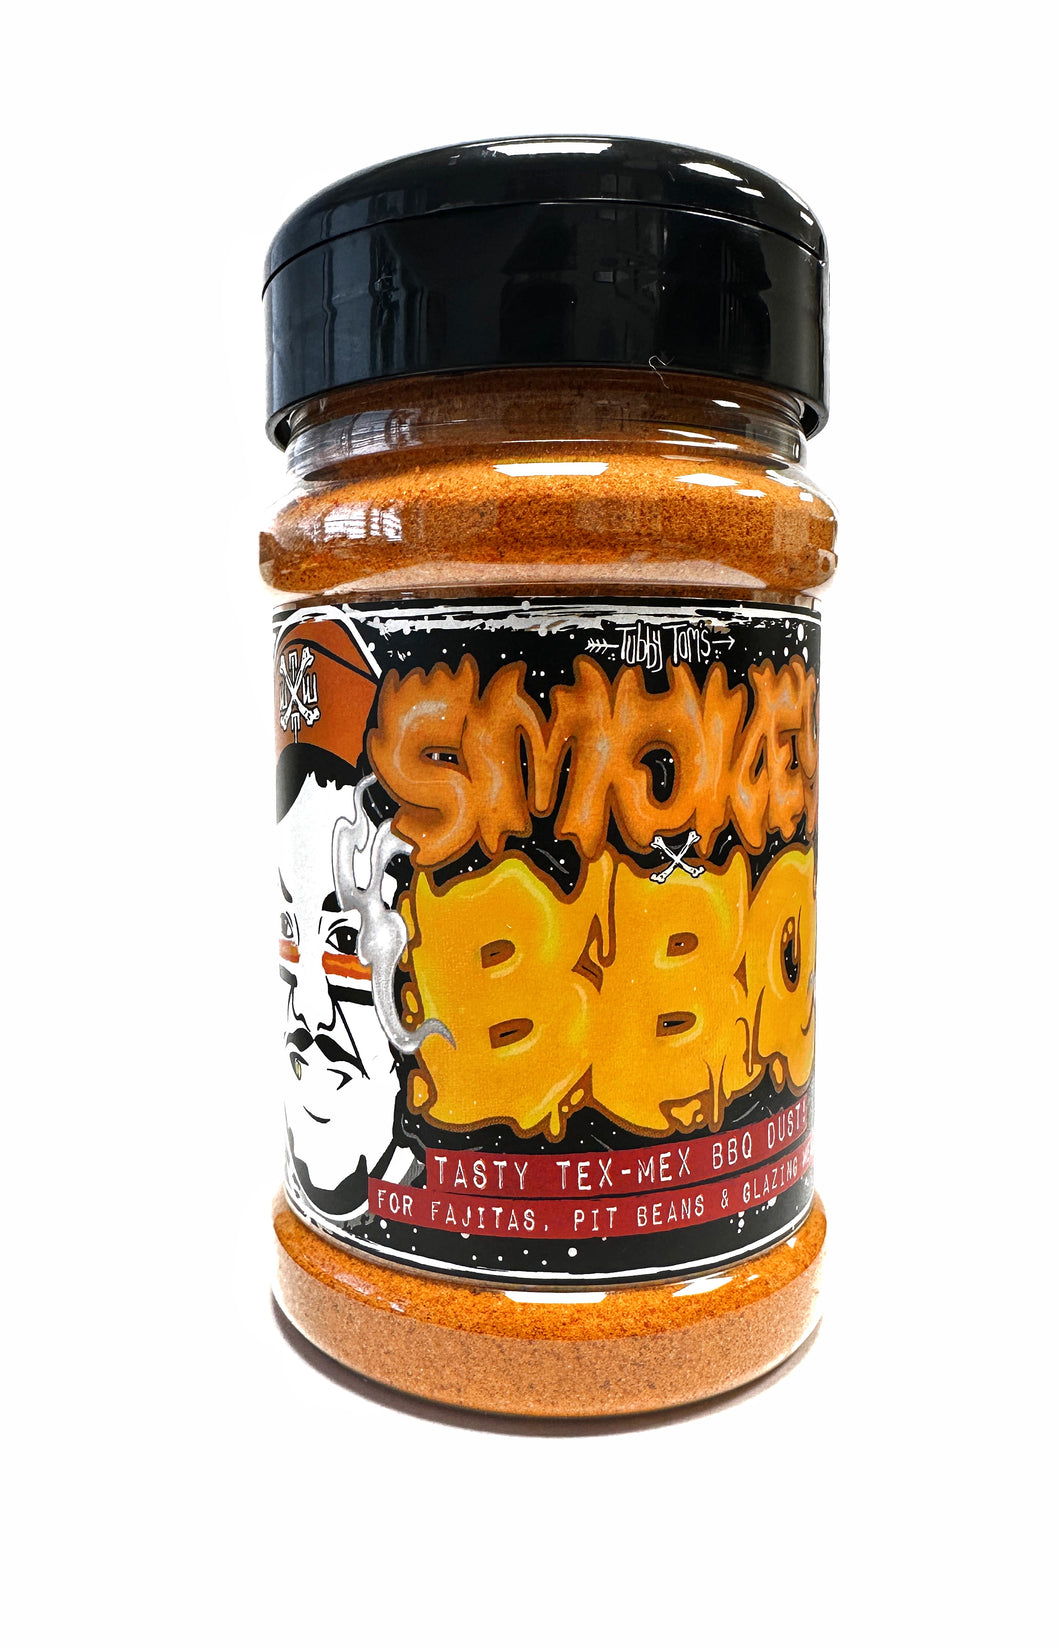 Smokey BBQ - Magical Tex Mex Seasoning